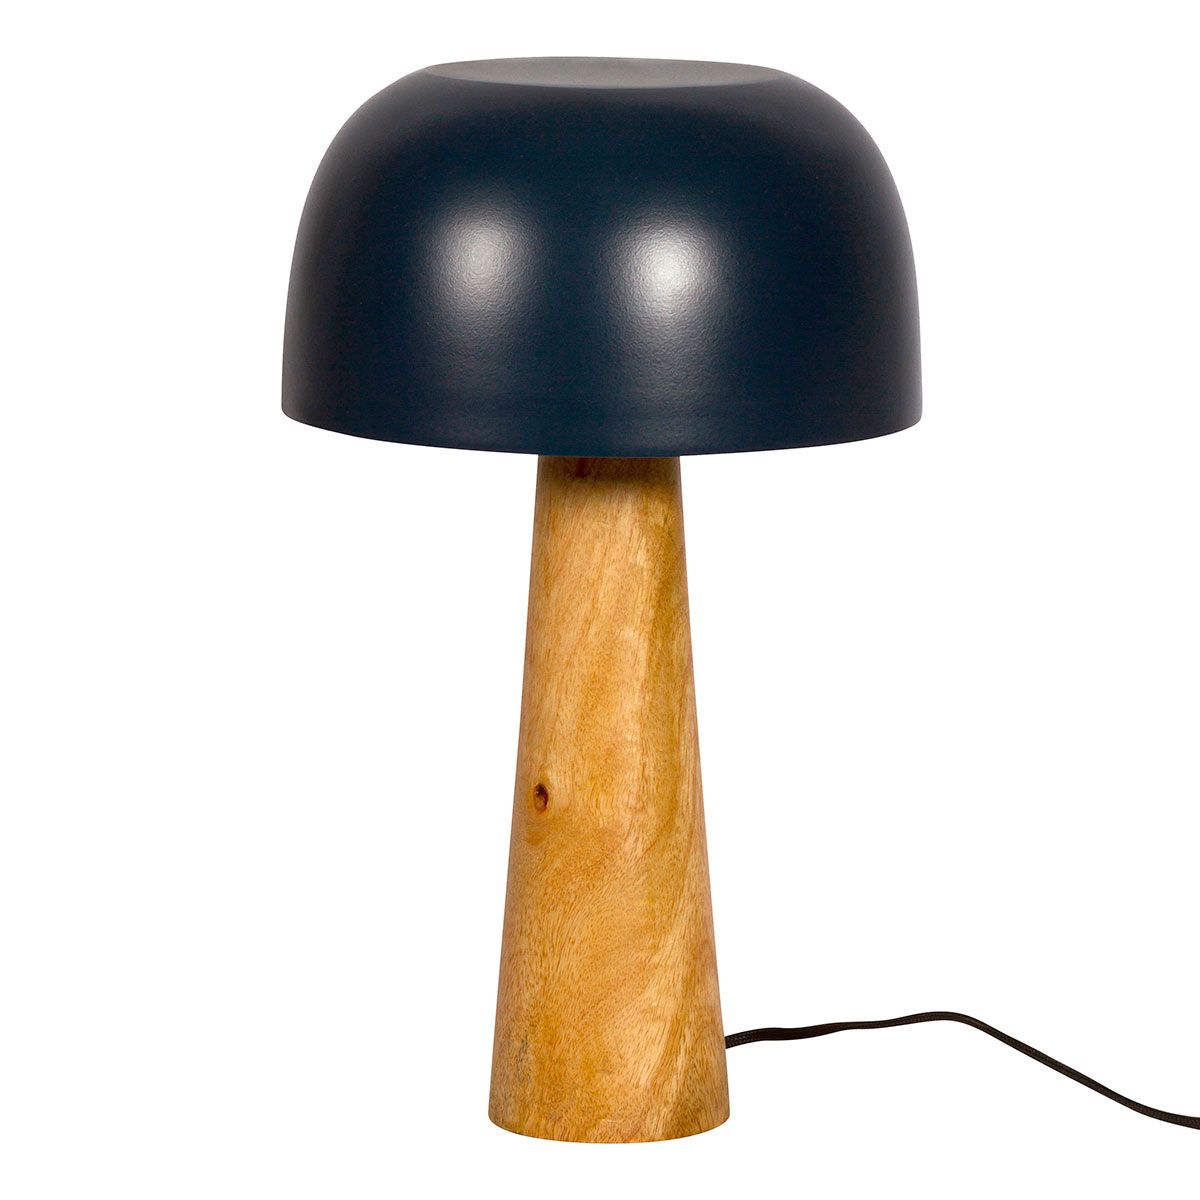 Lampe champignon Terracotta et Doré - L'Atelier de Pablo